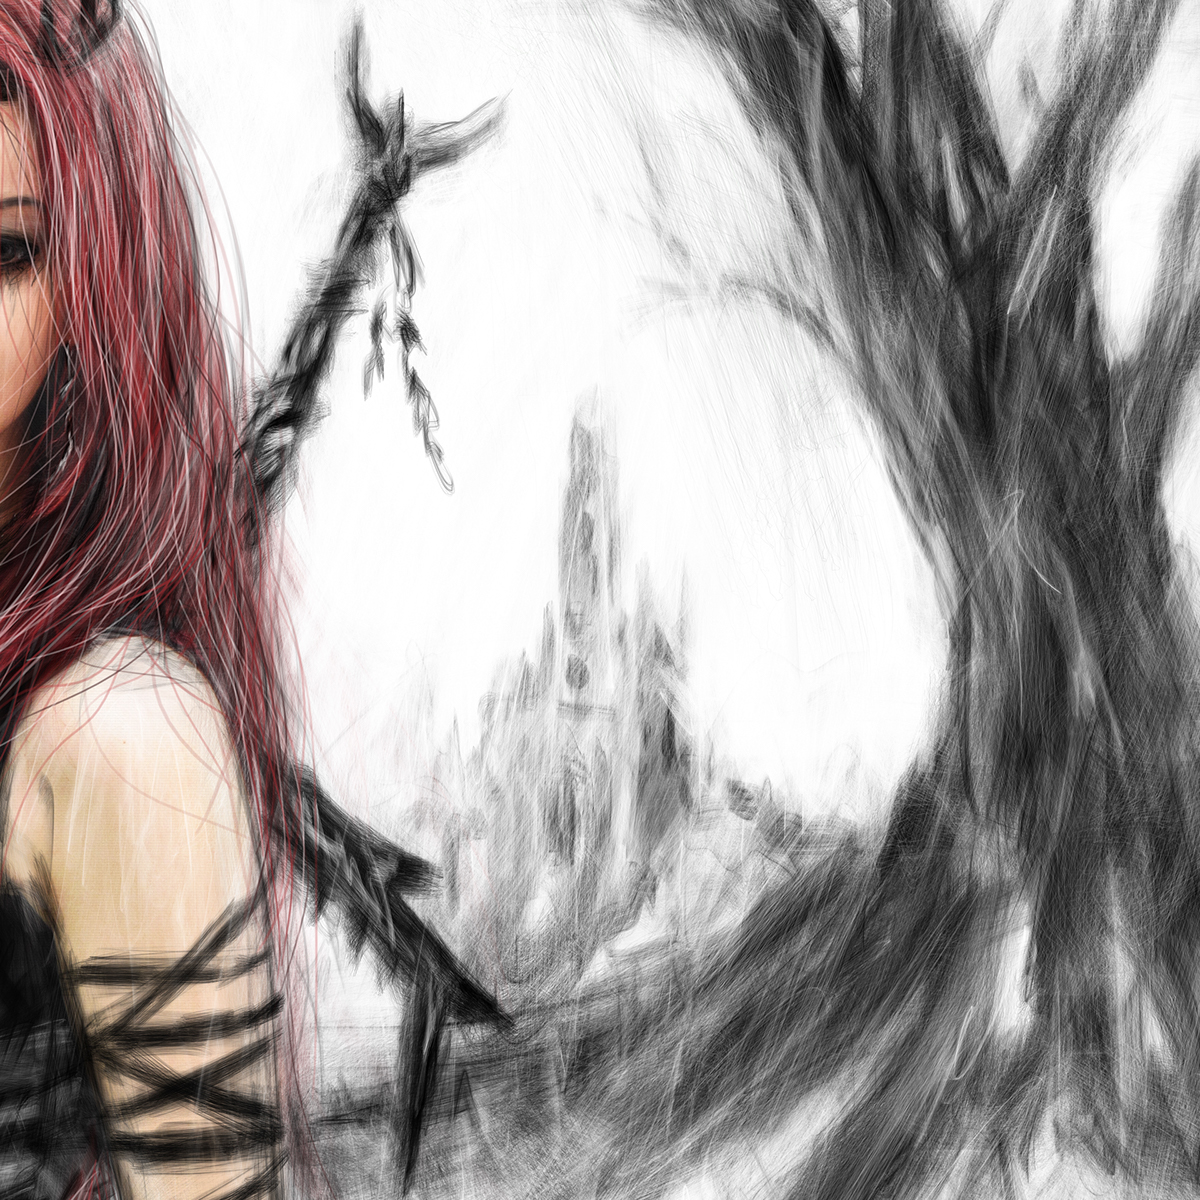 redhead red hair long hair warrior gothic fantasy woman female girl